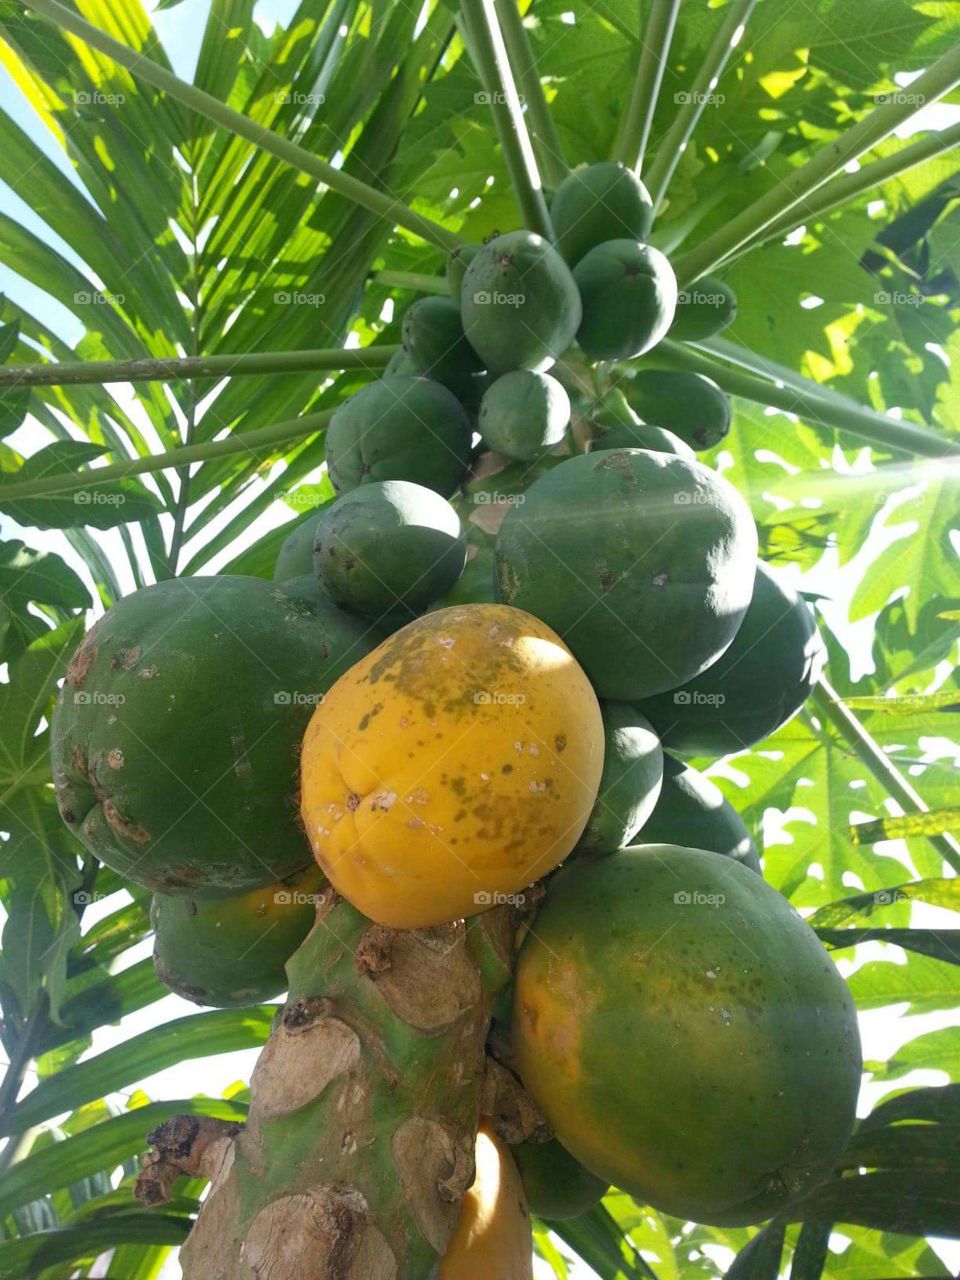 A ripe papaya.